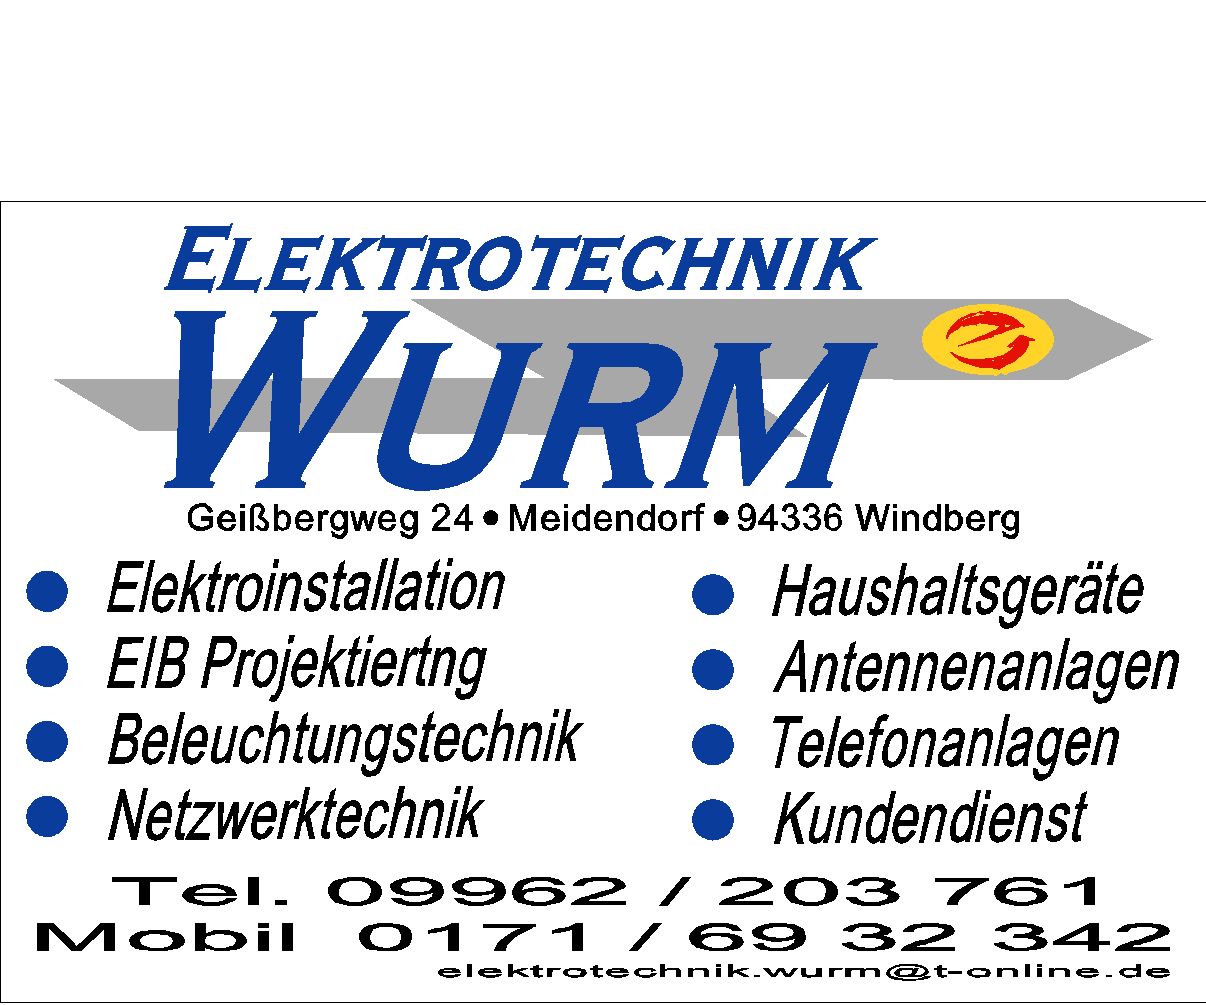 Werbedruck der Firma Elektrotechnik Wurm mit den angebotenen Dienstleistungen